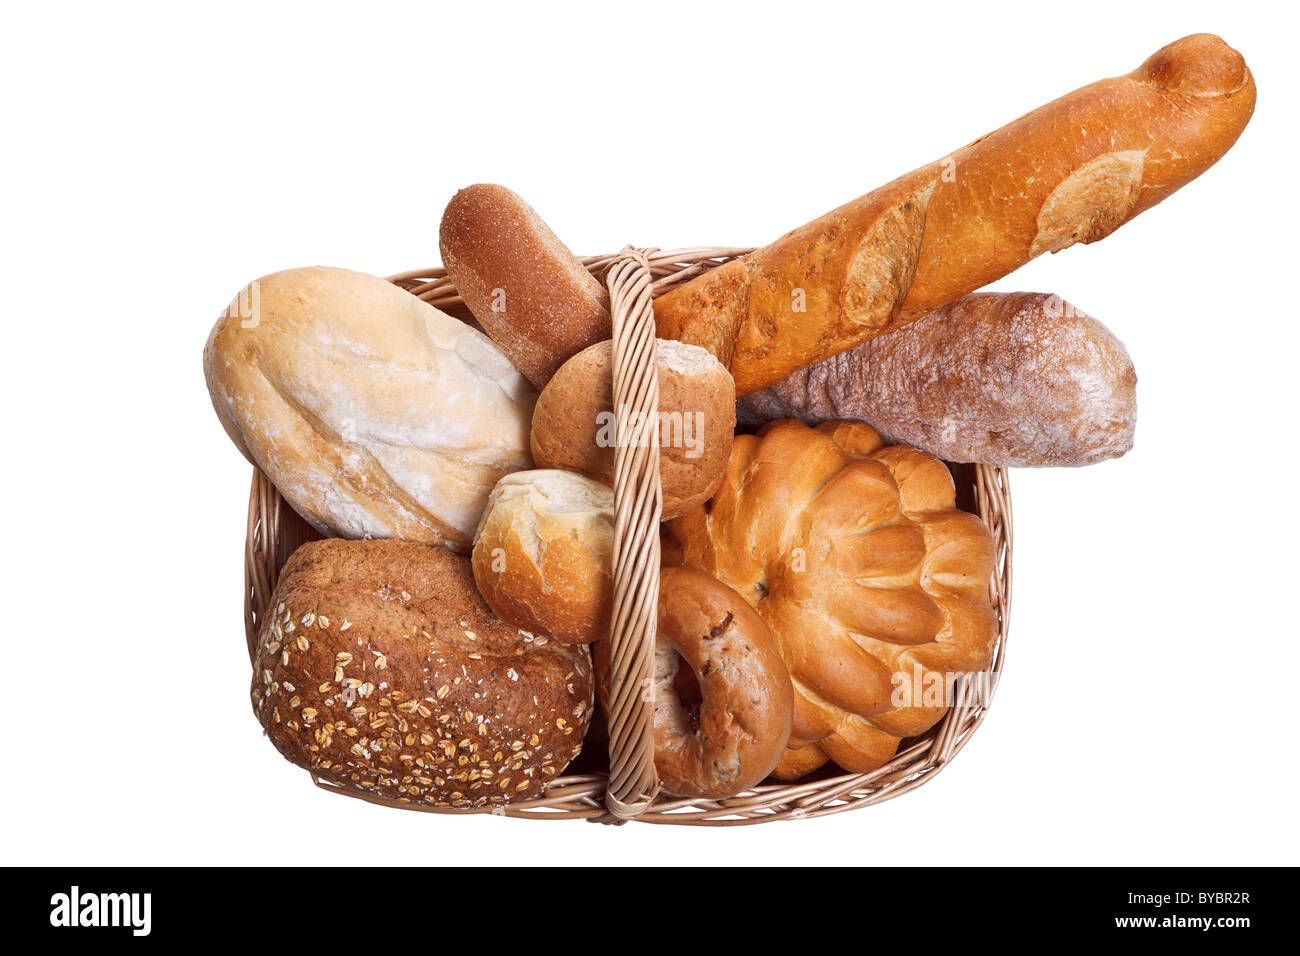 Foto von verschiedenen Arten von Brot in einem Weidenkorb isoliert auf einem weißen Hintergrund. Stockfoto